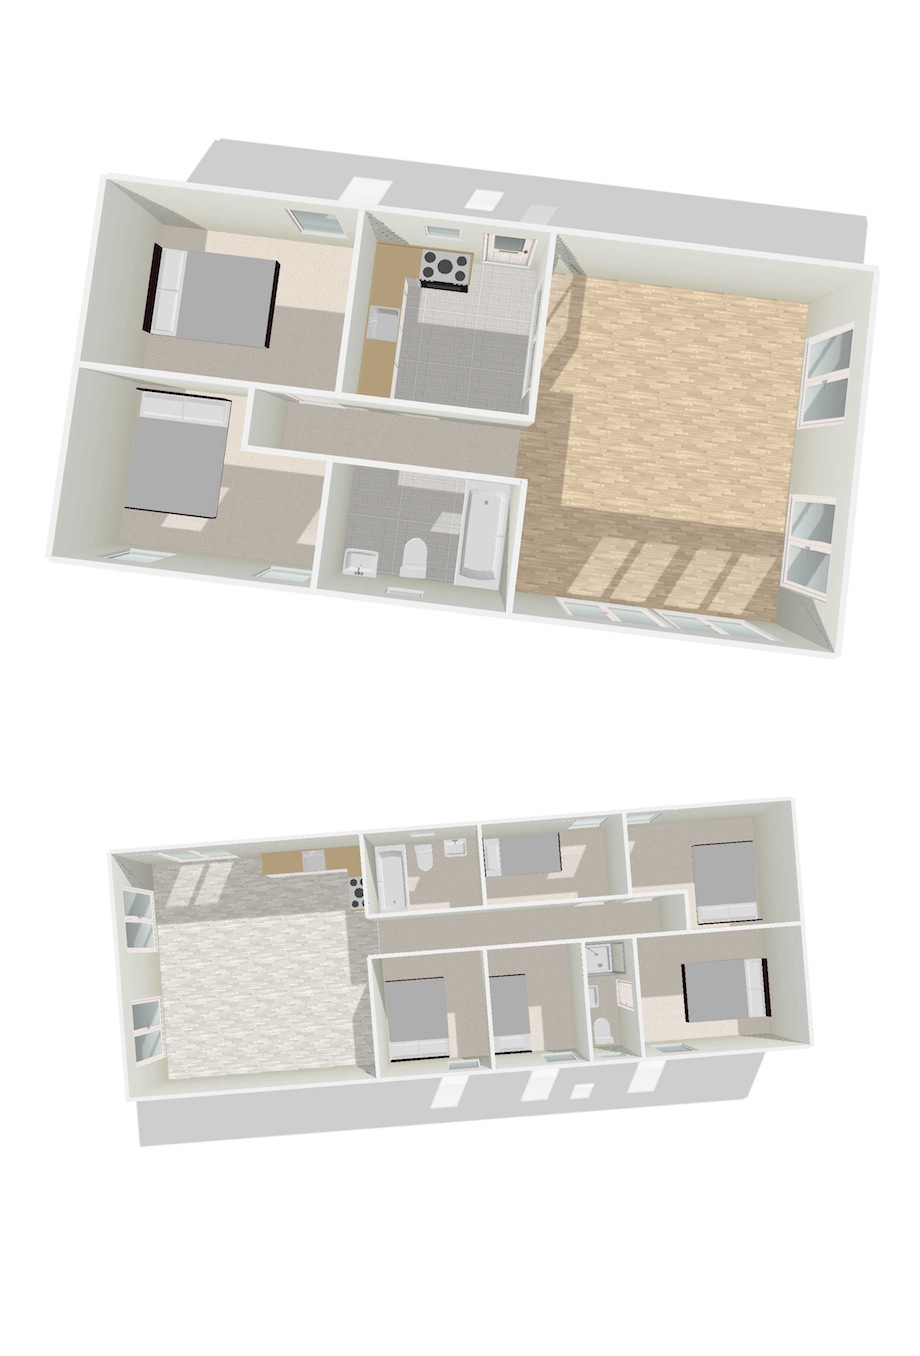 Mobile-Home-Floor-Plans-3d-p2